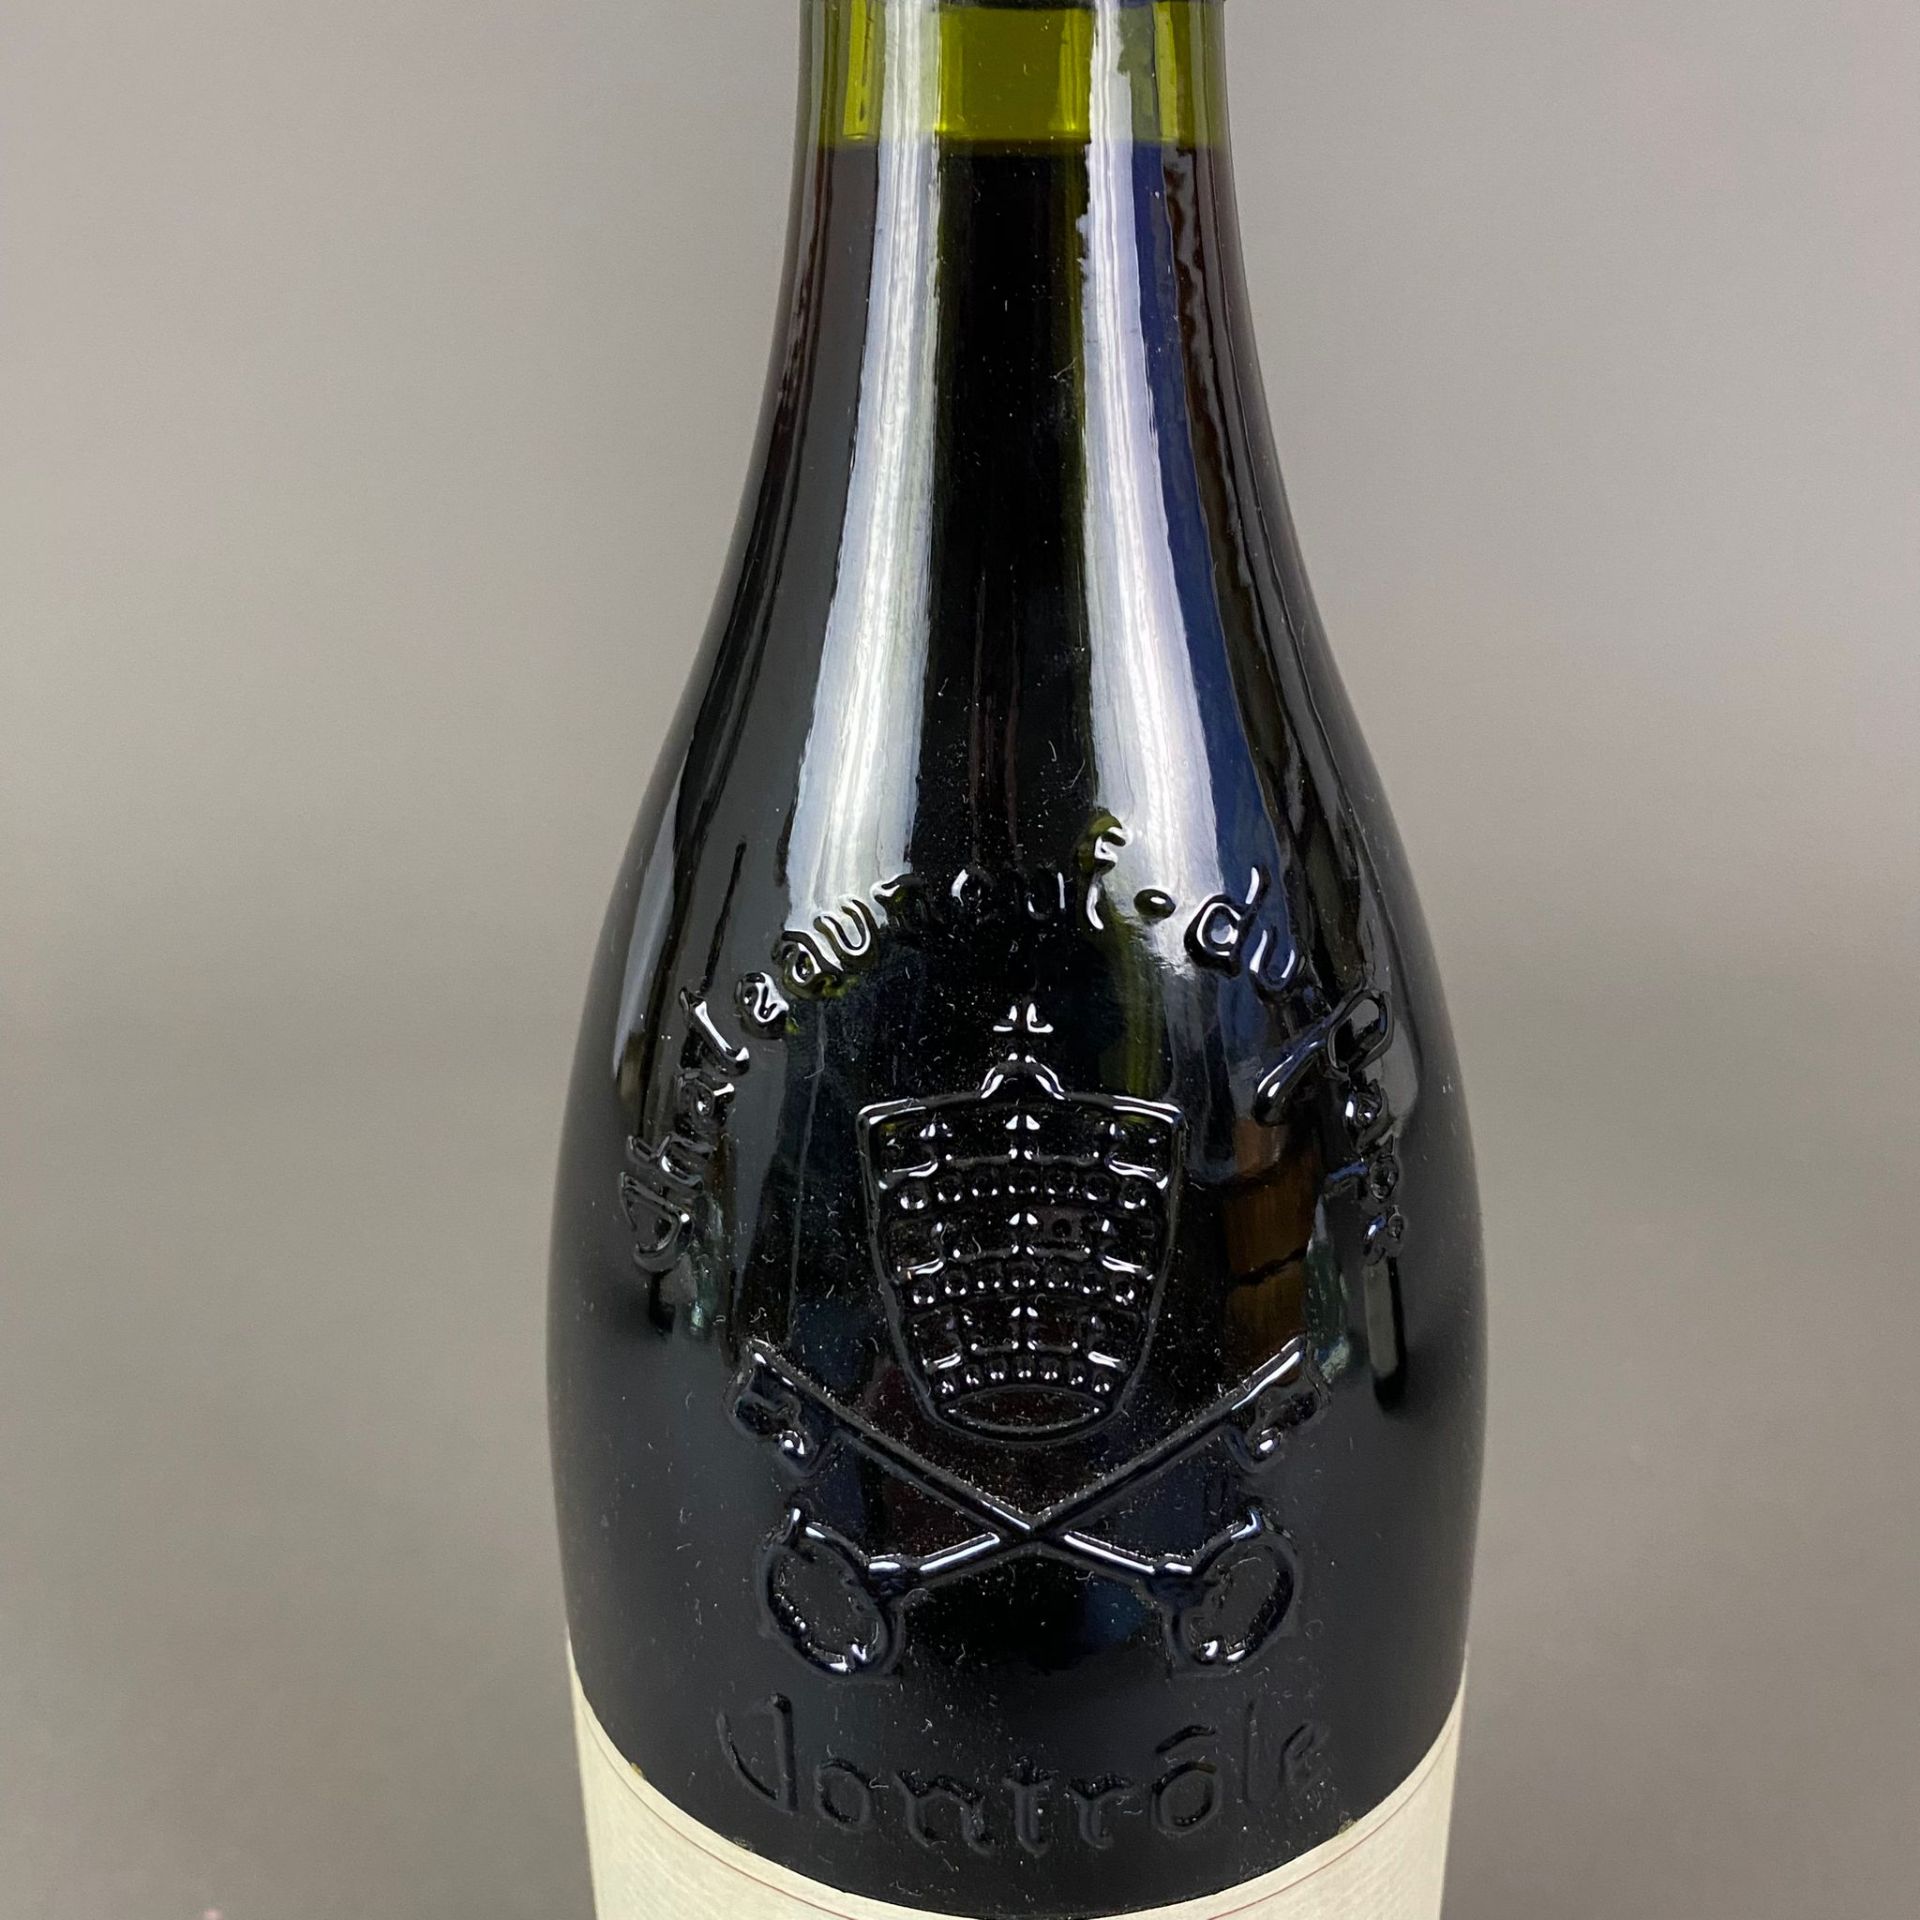 Weinkonvolut - 3 Flaschen 1986 Domaine de la Roquette, Châteauneuf-du-Pape, Rhône, France, 750 ml, - Image 6 of 8